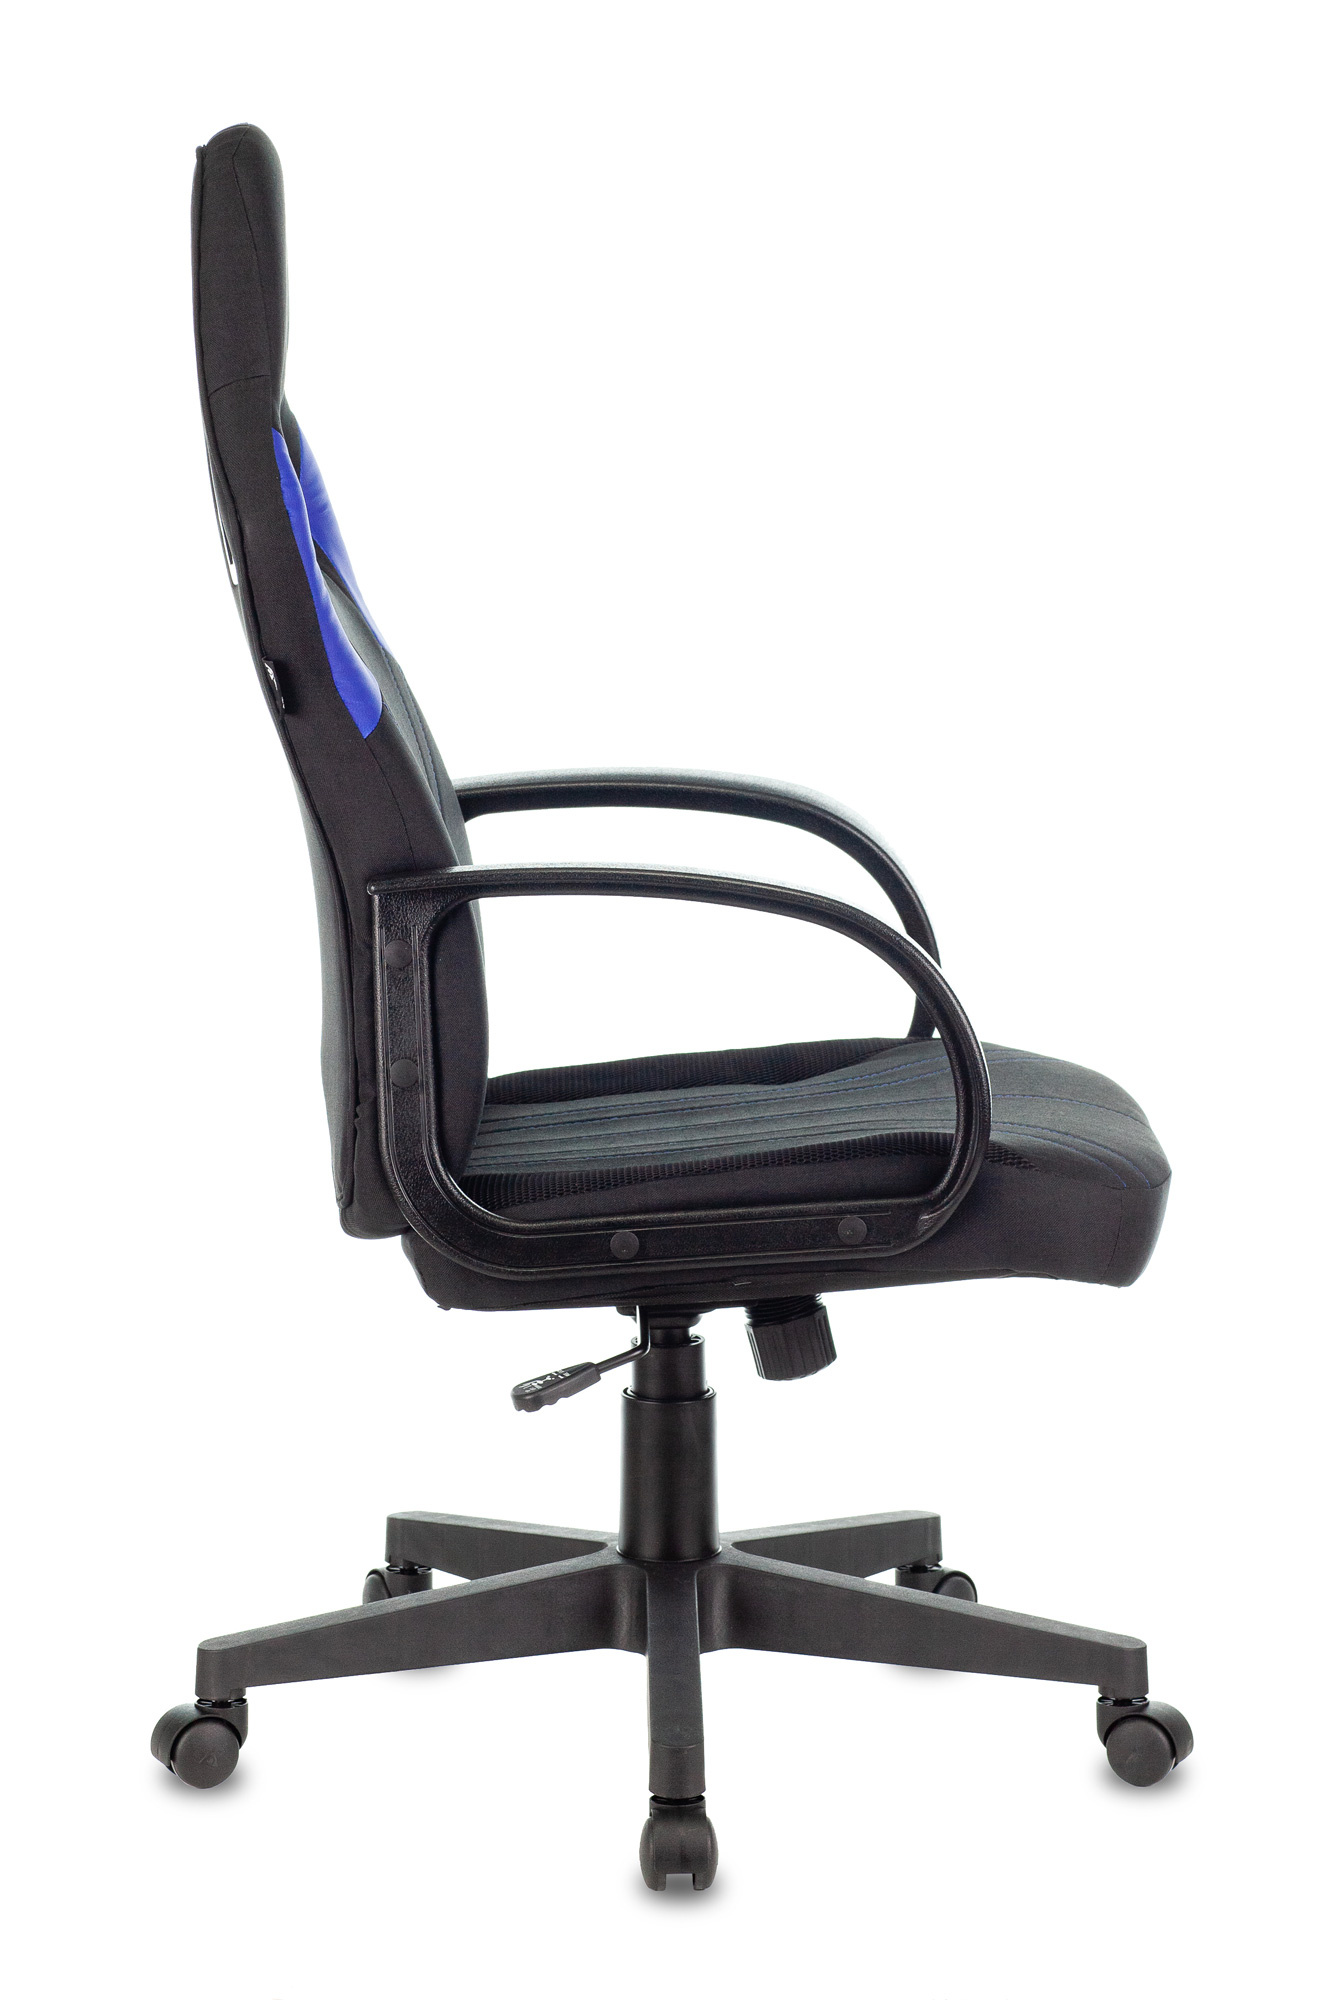 Кресло игровое Zombie RUNNER черный/синий текстиль/эко.кожа крестов. пластик